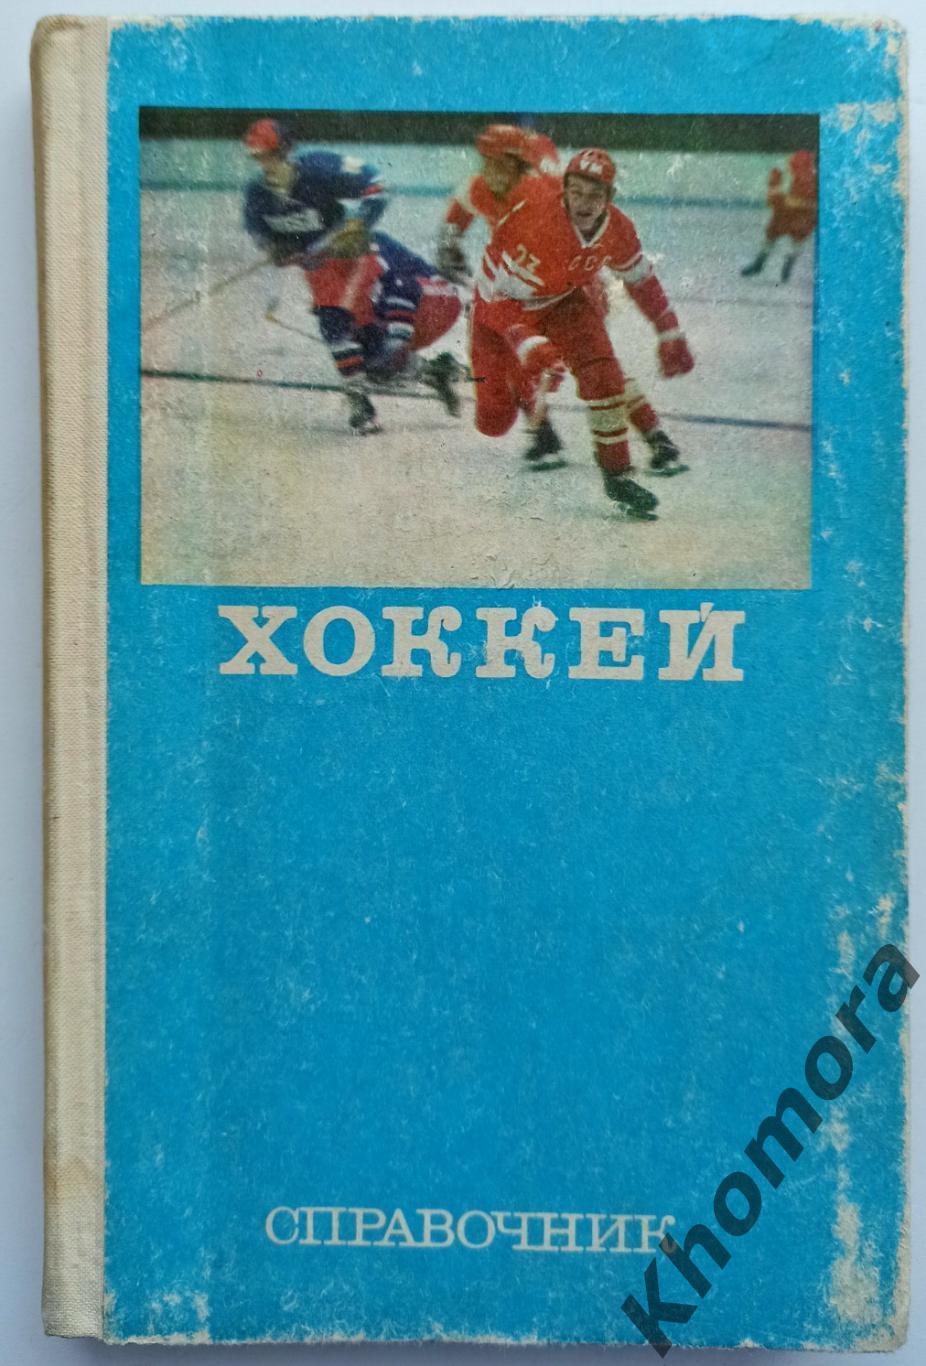 Справочник Хоккей 1977 (издательство - ФиС) - книга энциклопедия (312 страниц)